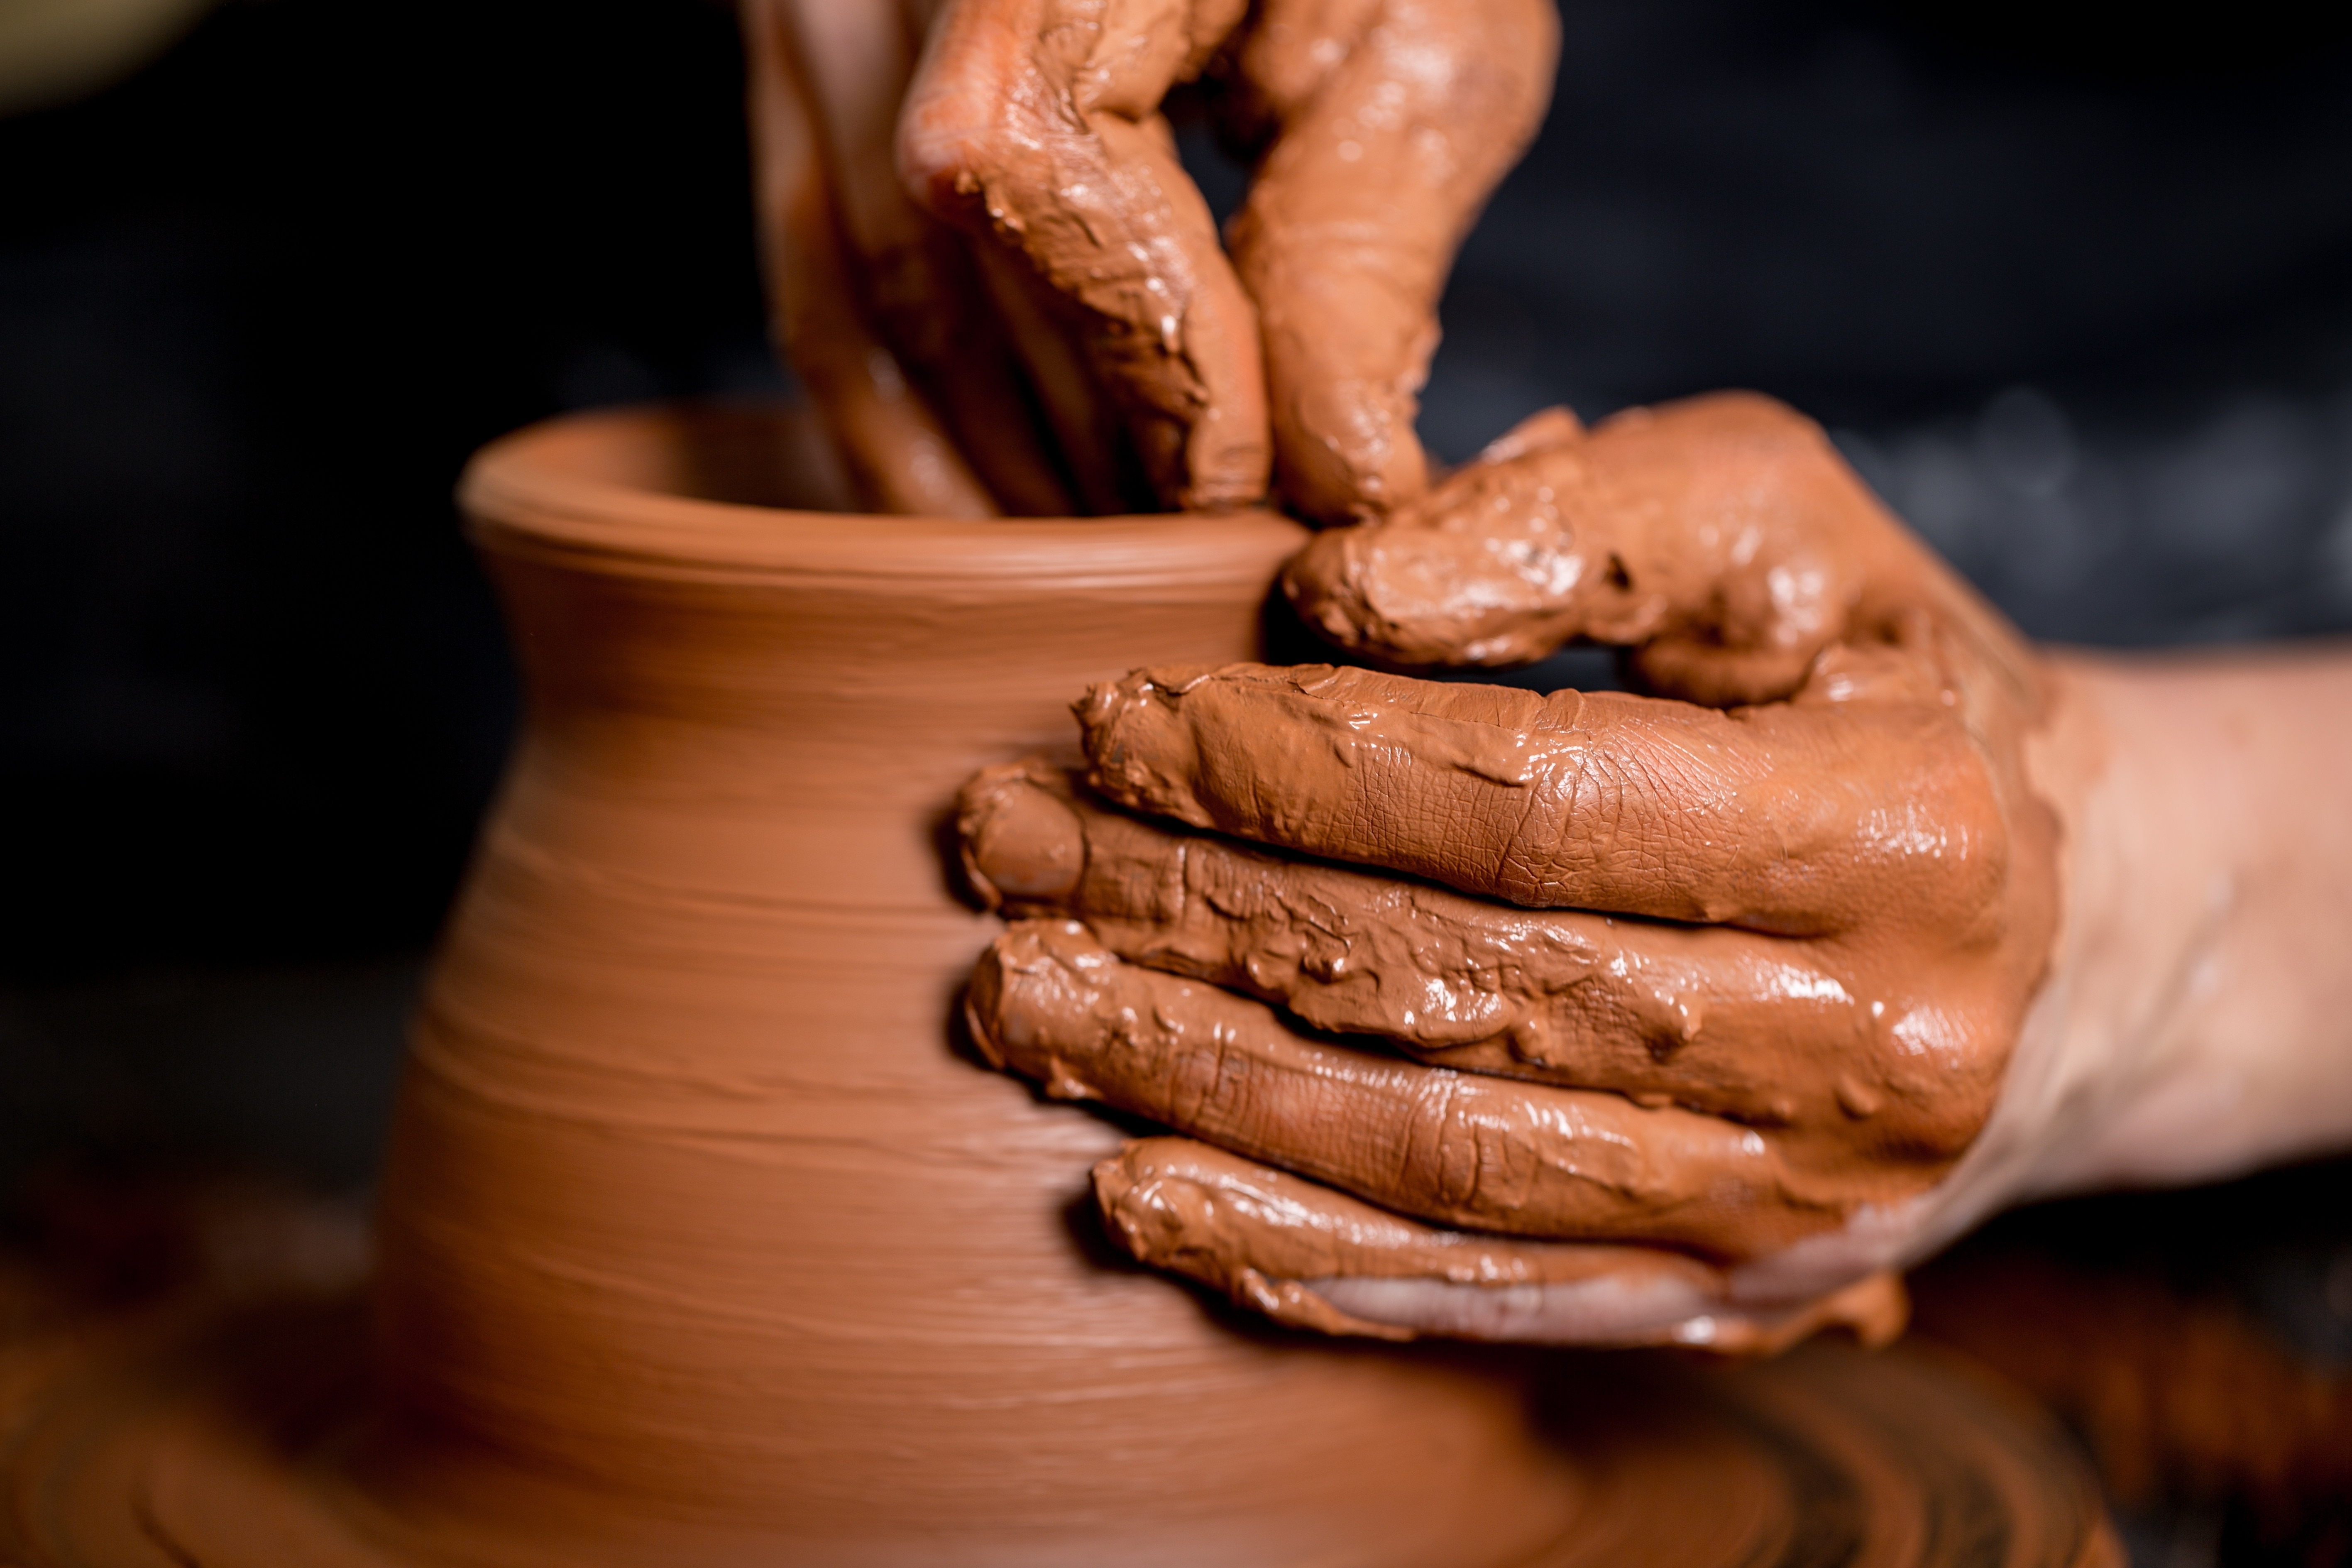 La cerámica implica facultades motoras y creativas. 
(Foto Prensa Libre: Shutterstock)